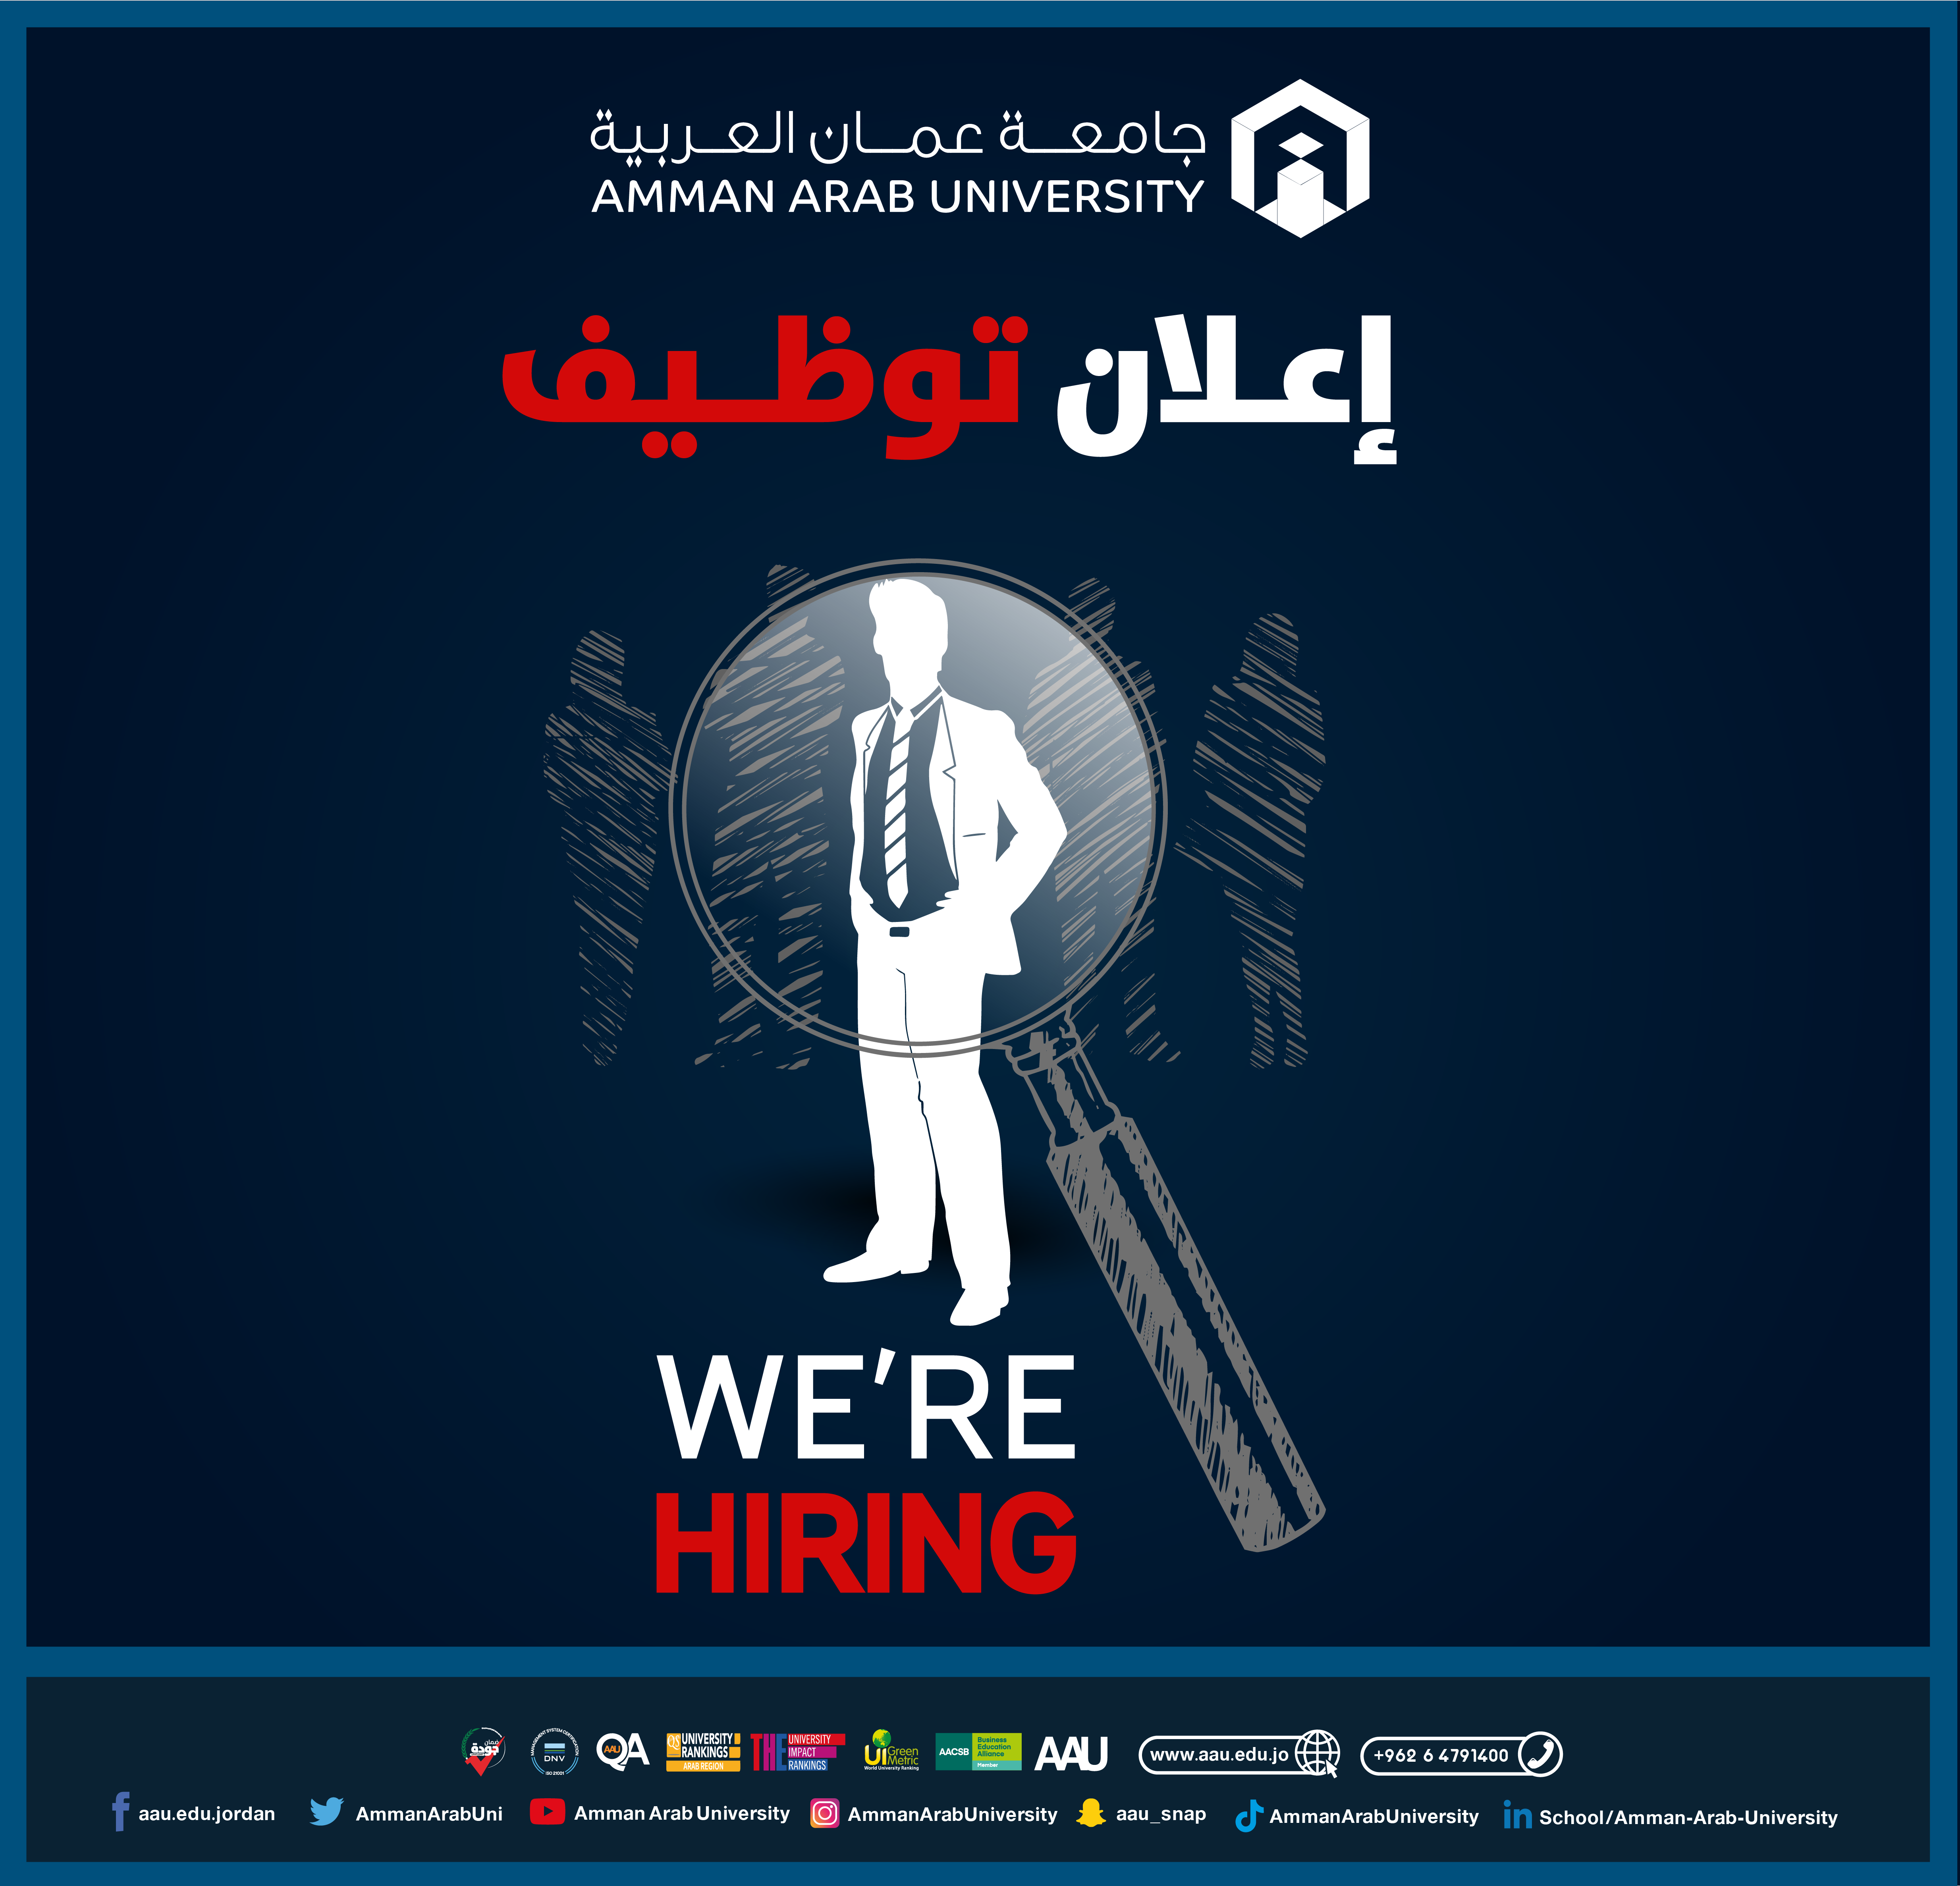 جامعة عمان العربية تعلن عن حاجتها لتعيين موظفين قبول والتسجيل‎